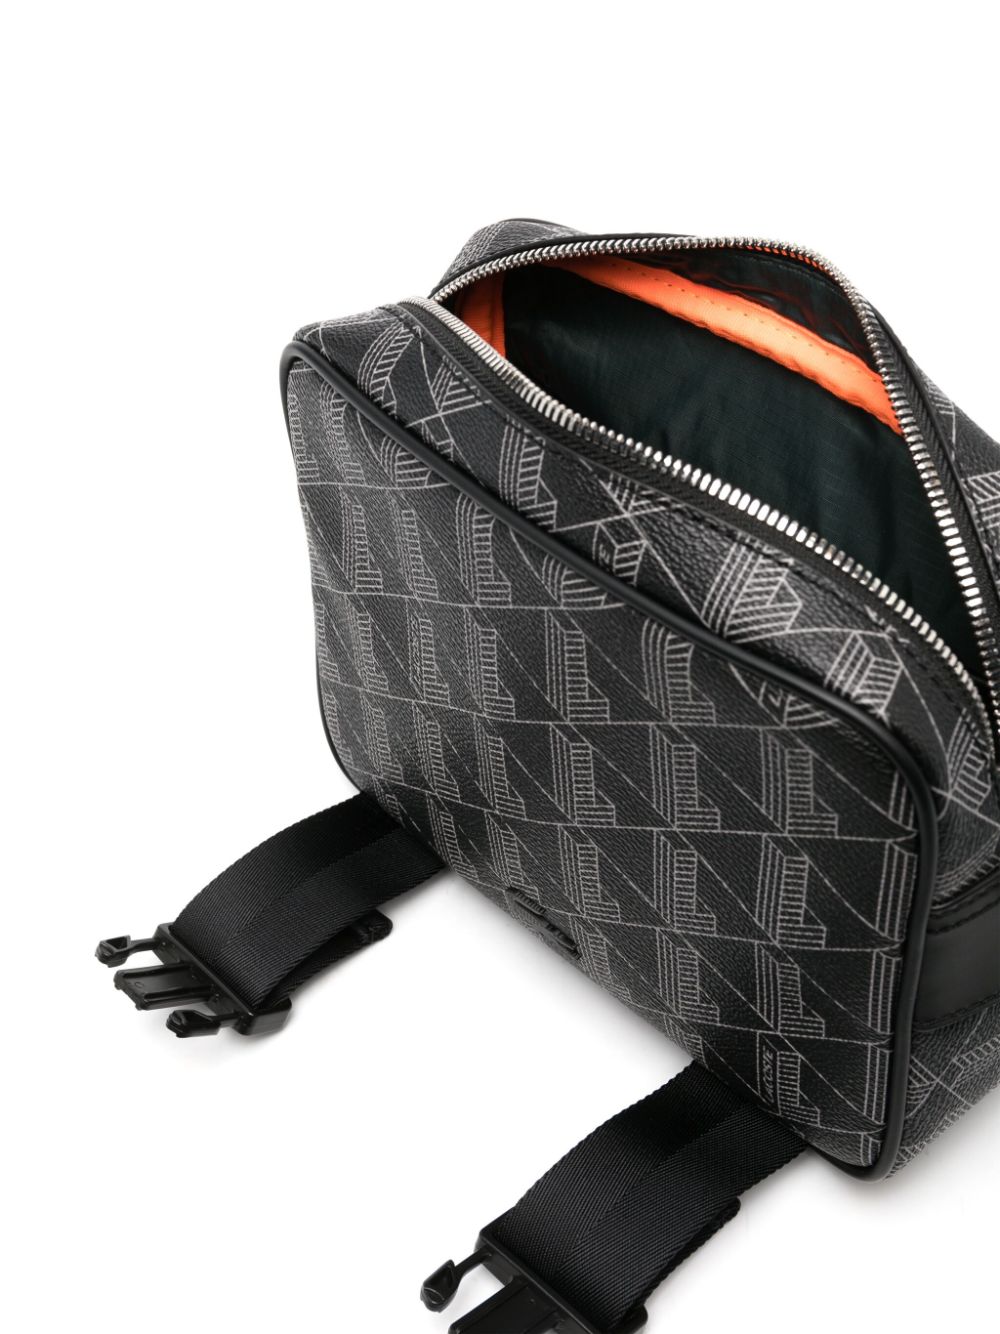 Lacoste Black 'The Blend Monogram' Bag Lacoste